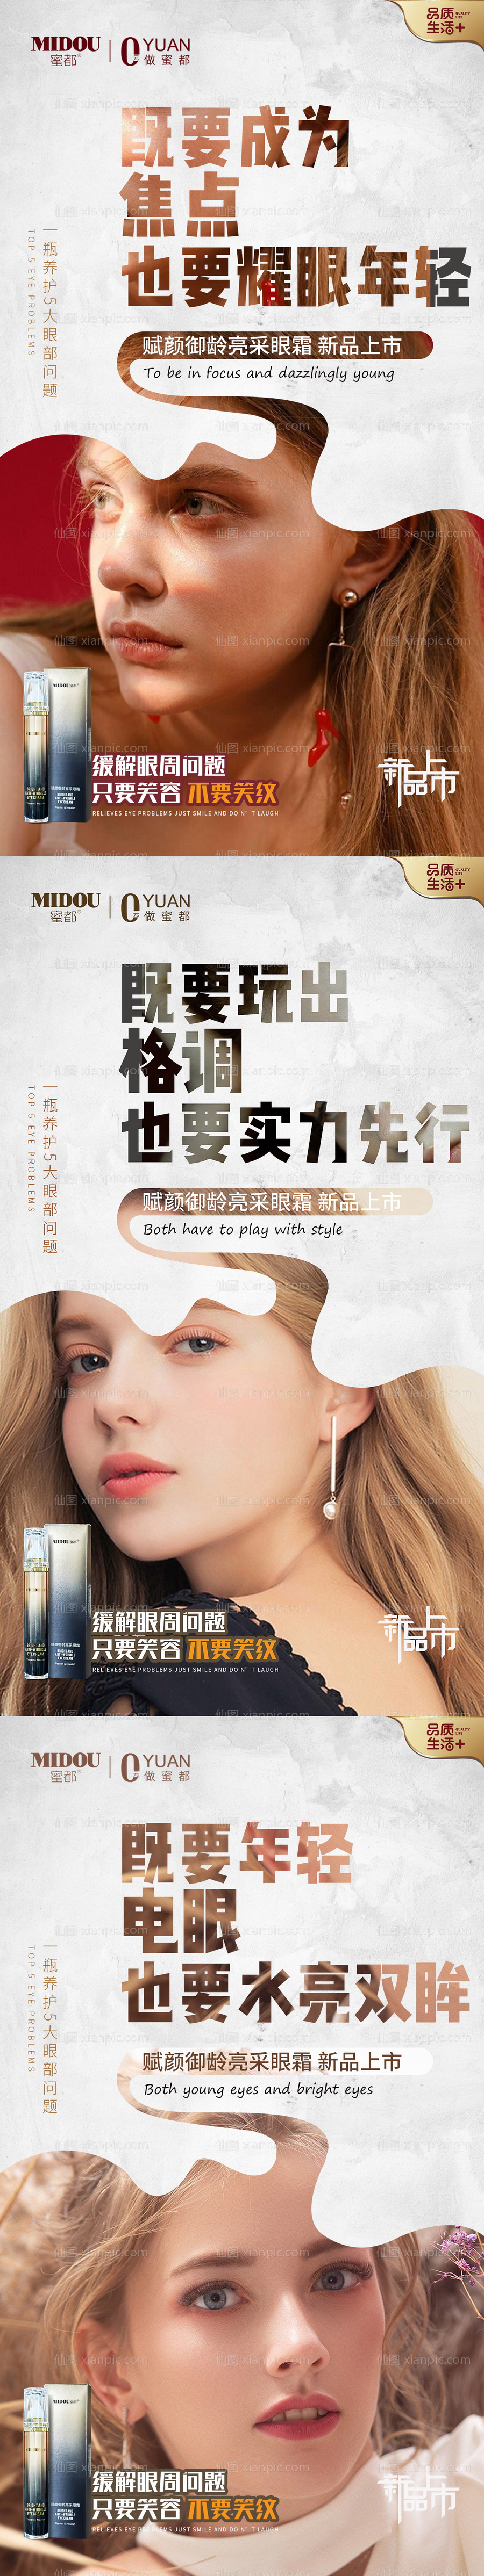 素材乐-眼霜化妆品微商朋友圈产品人物系列海报